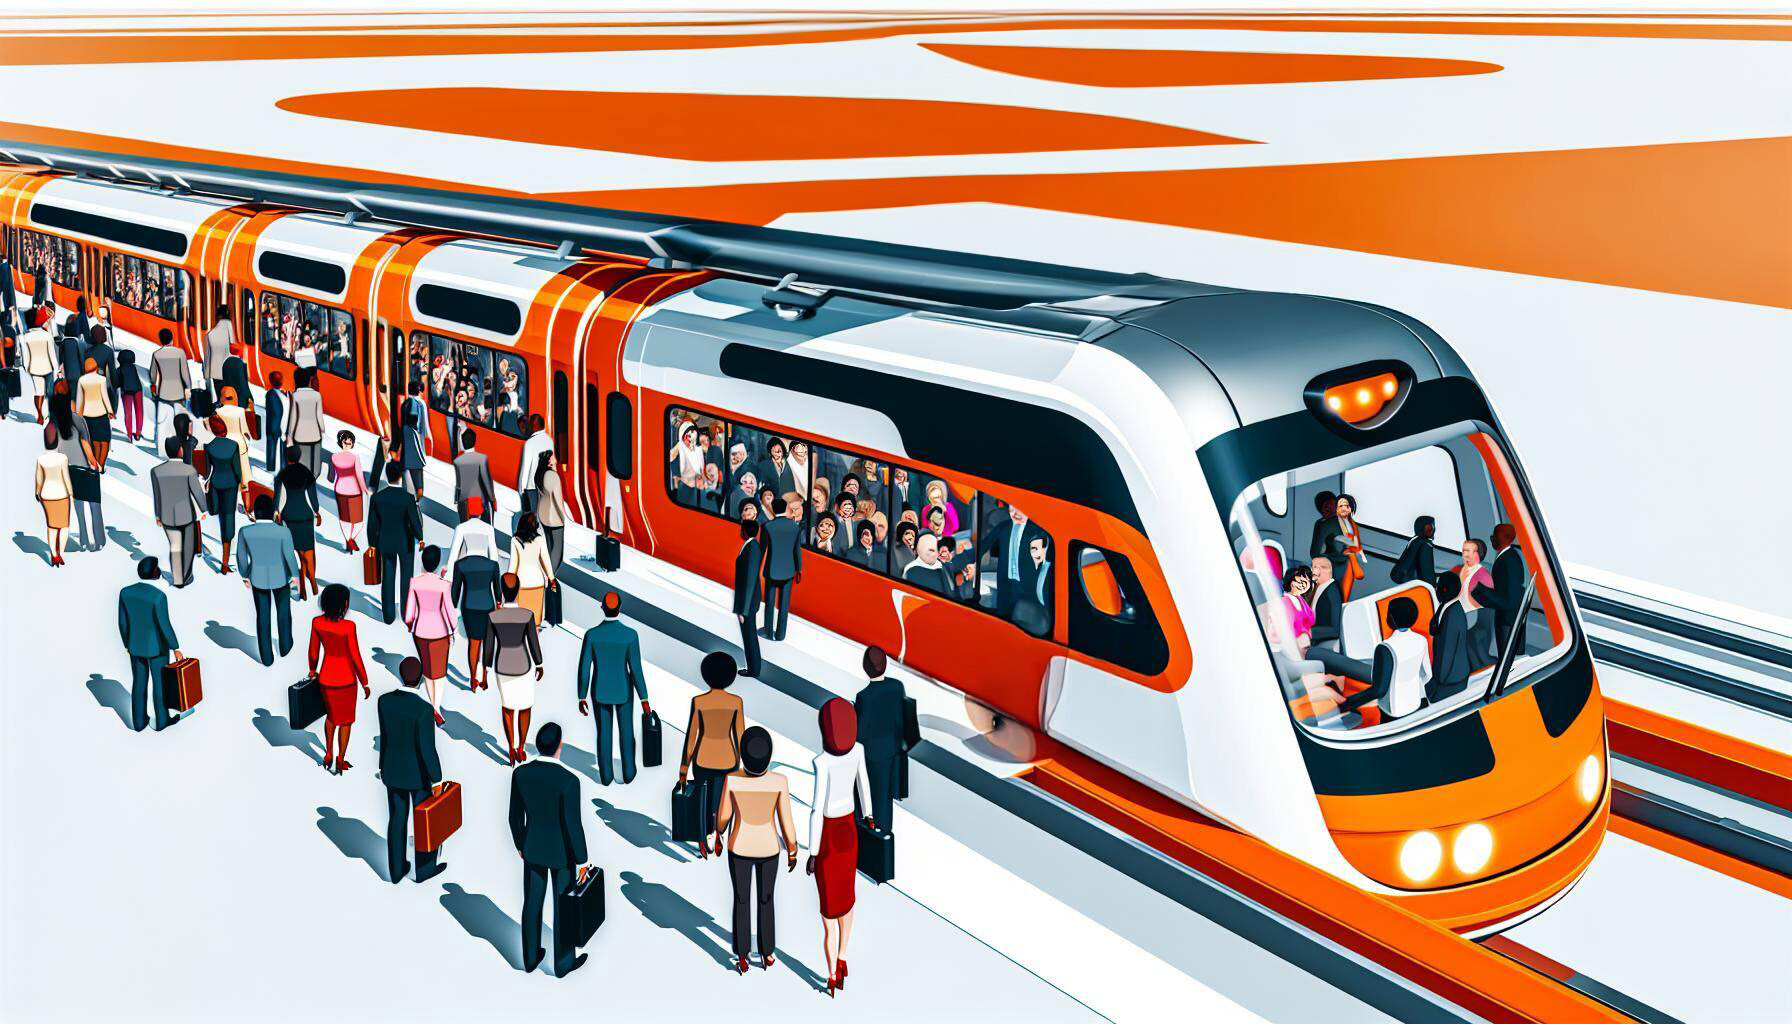 People boarding a white and orange futuristic train